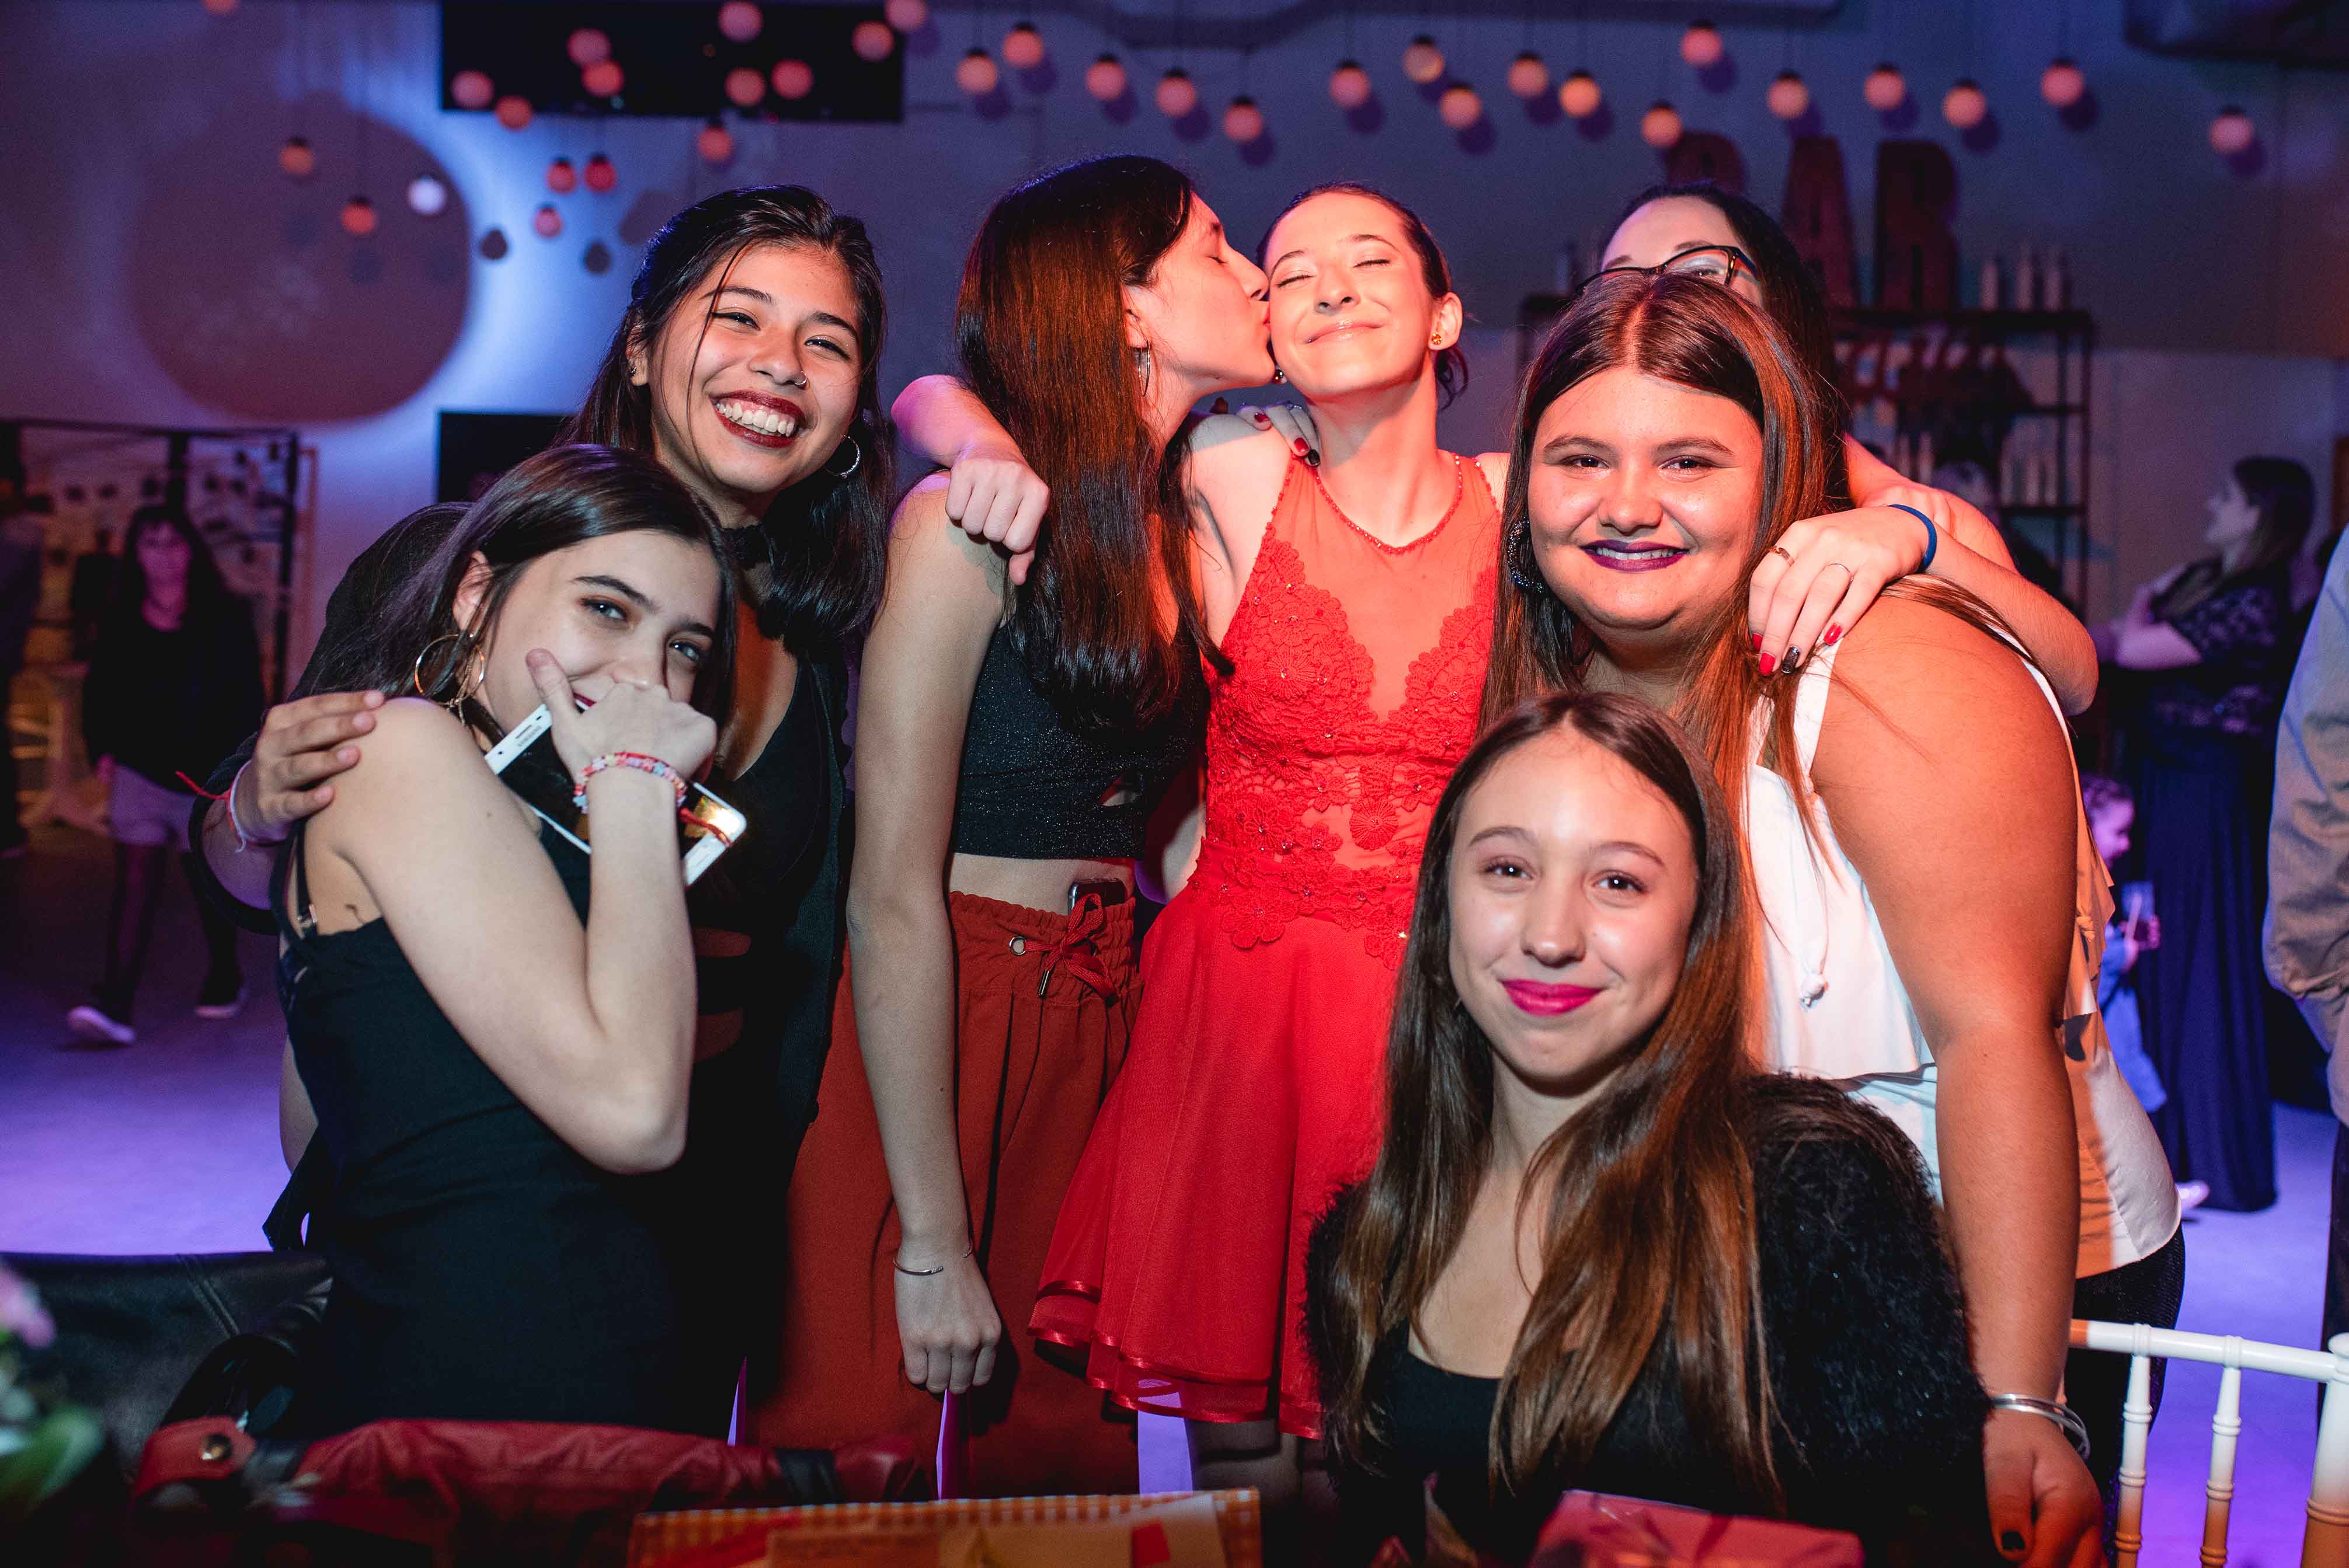 Fotos de la fiesta de quince años de Euge en Rosario realizadas por Bucle Fotografias Flor Bosio y Caro Clerici